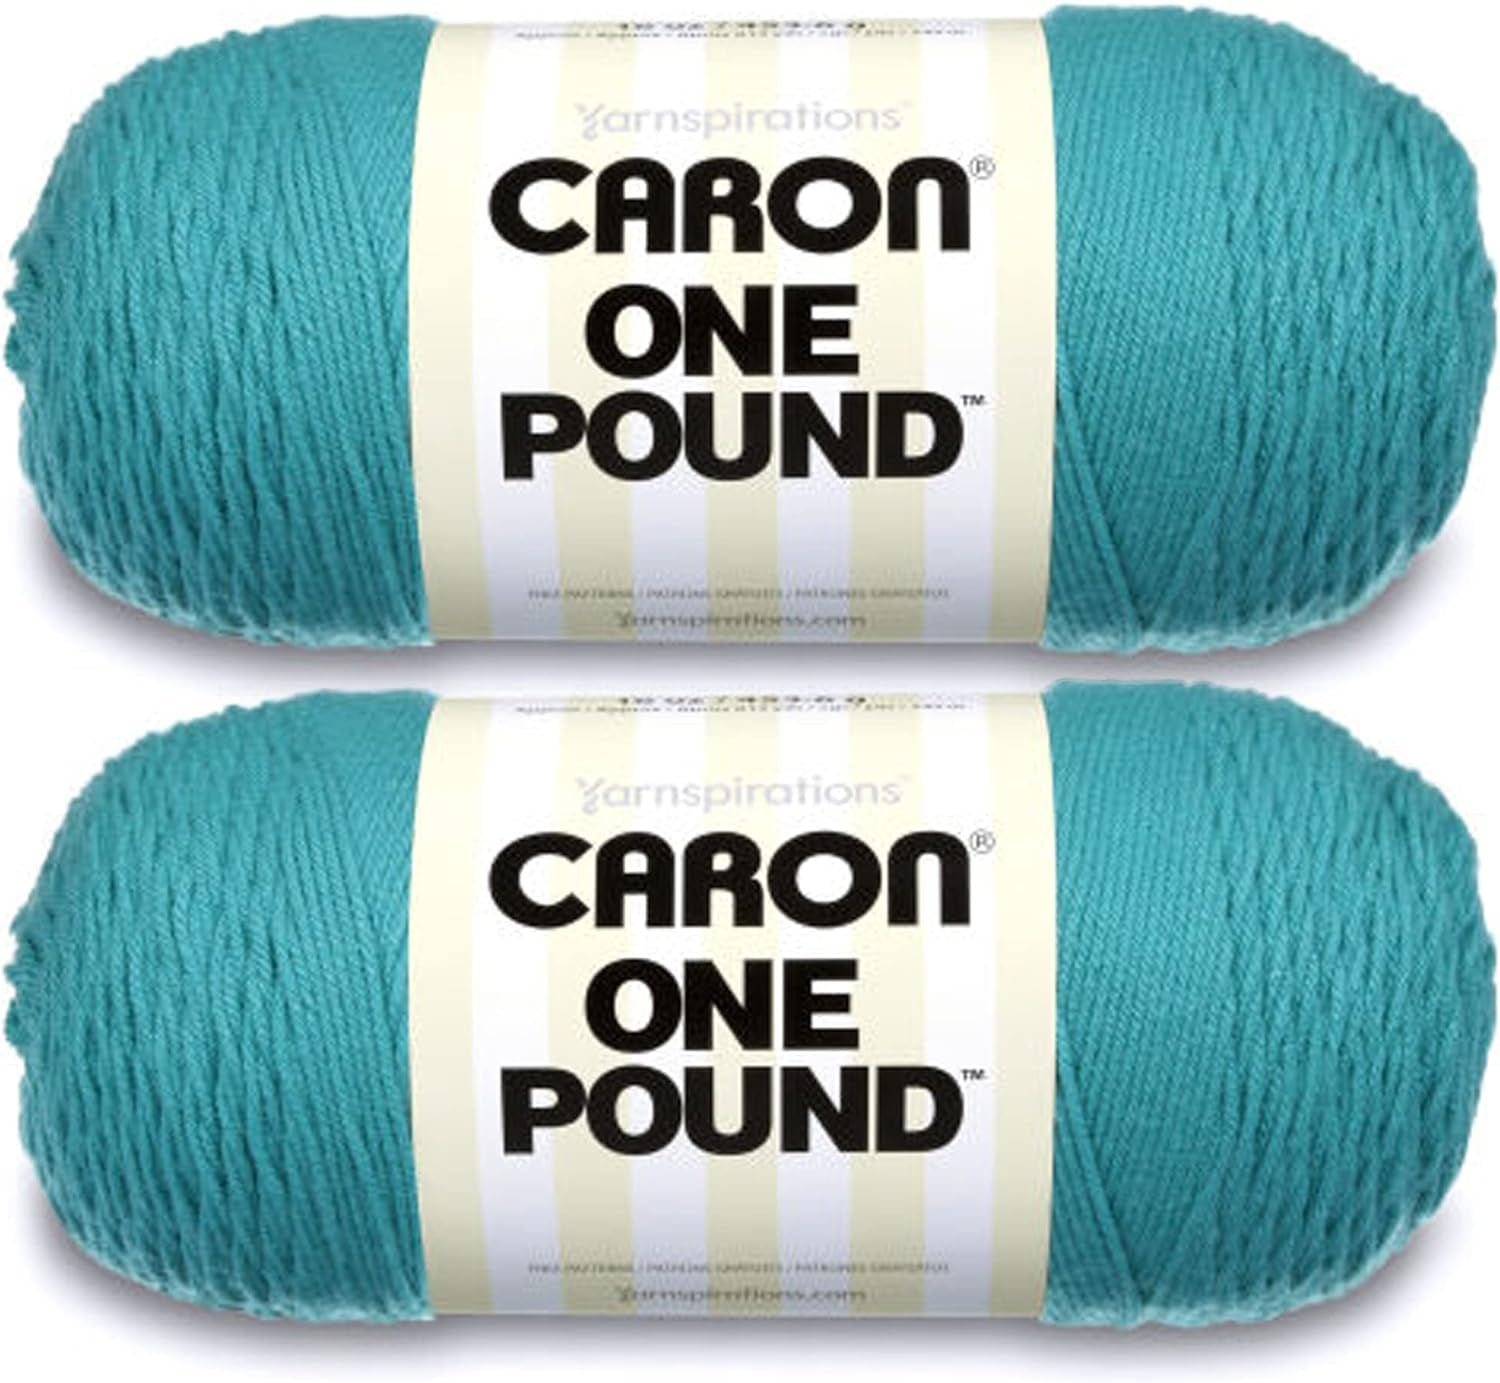 One Pound White Yarn - 2 Pack of 454G/16Oz - Acrylic - 4 Medium (Worsted) - 812 Yards - Knitting/Crochet